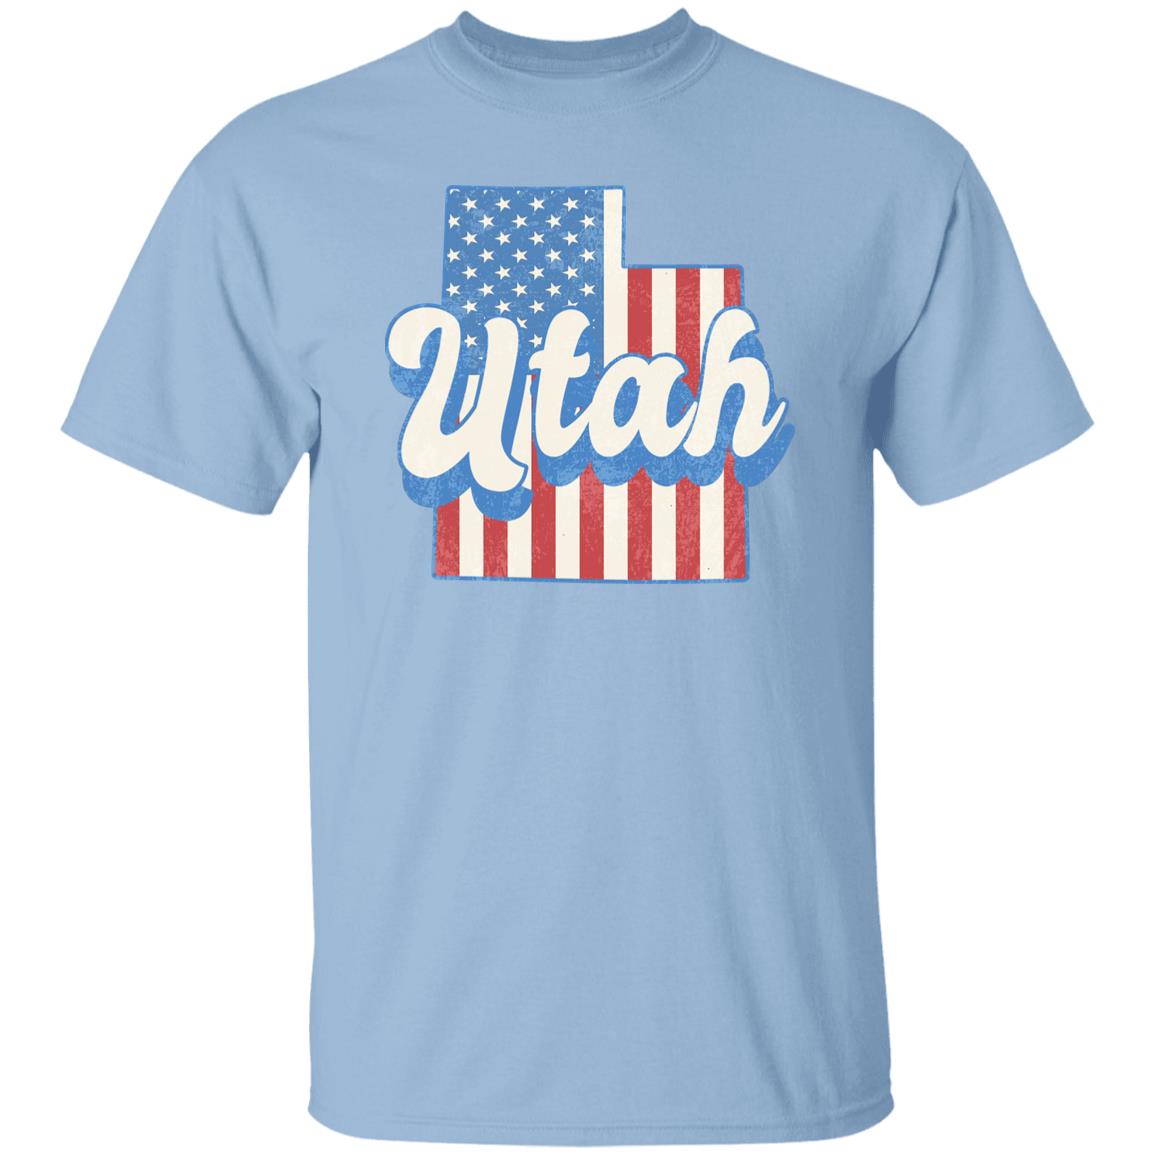 Utah US flag Unisex T-Shirt American patriotic UT state tee White Ash Blue-Light Blue-Family-Gift-Planet